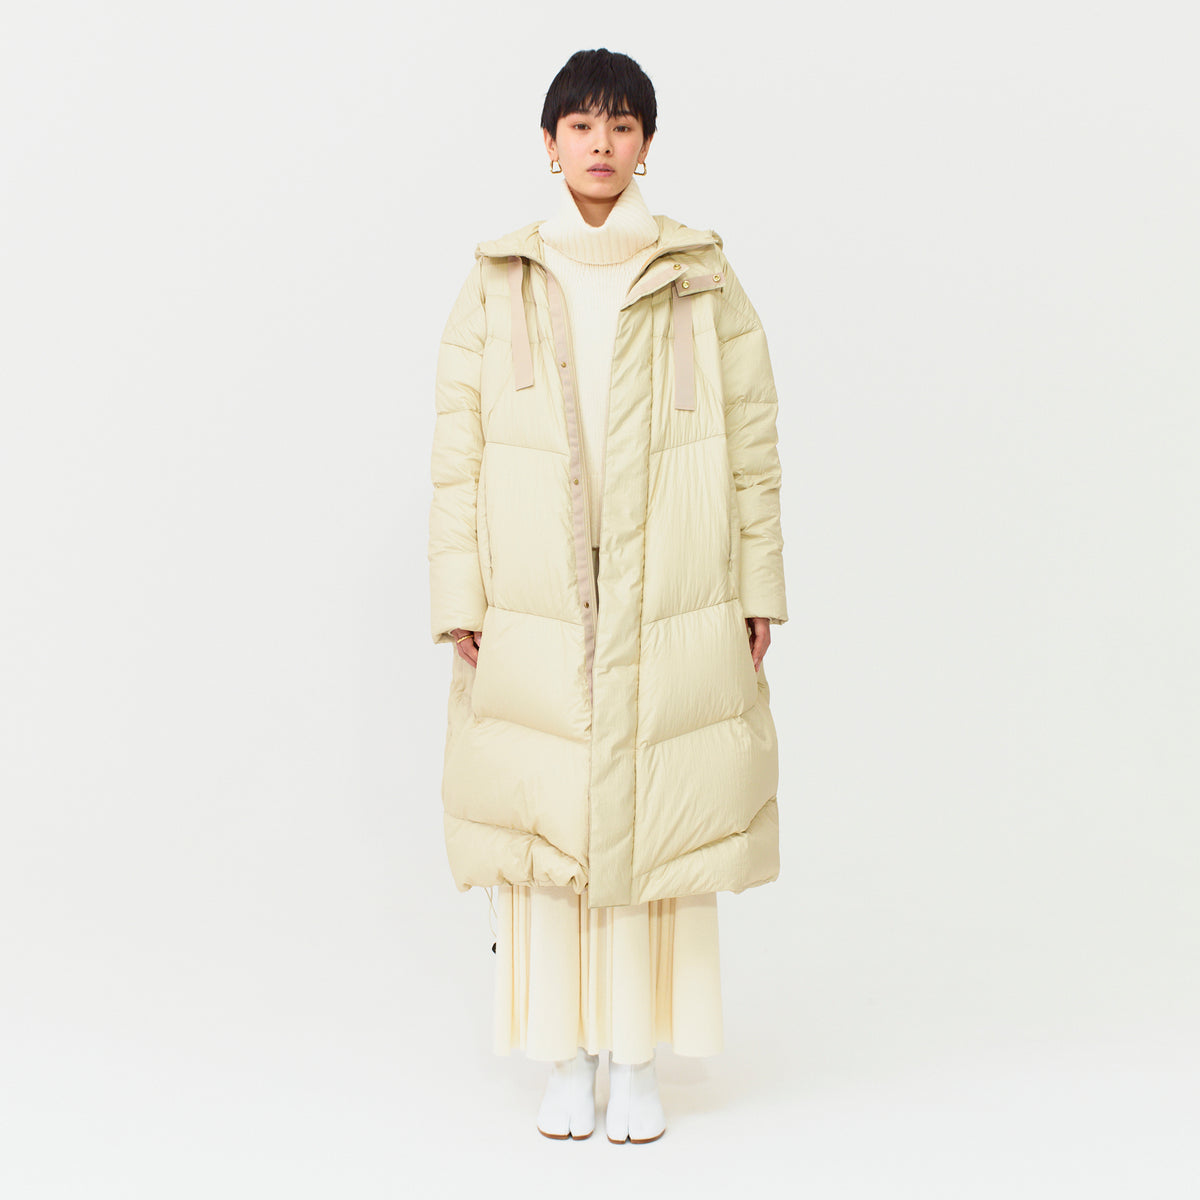 【ピレネックス】38 バロー 大きいサイズ コクーンシルエット ダウンジャケット袖丈約625cm